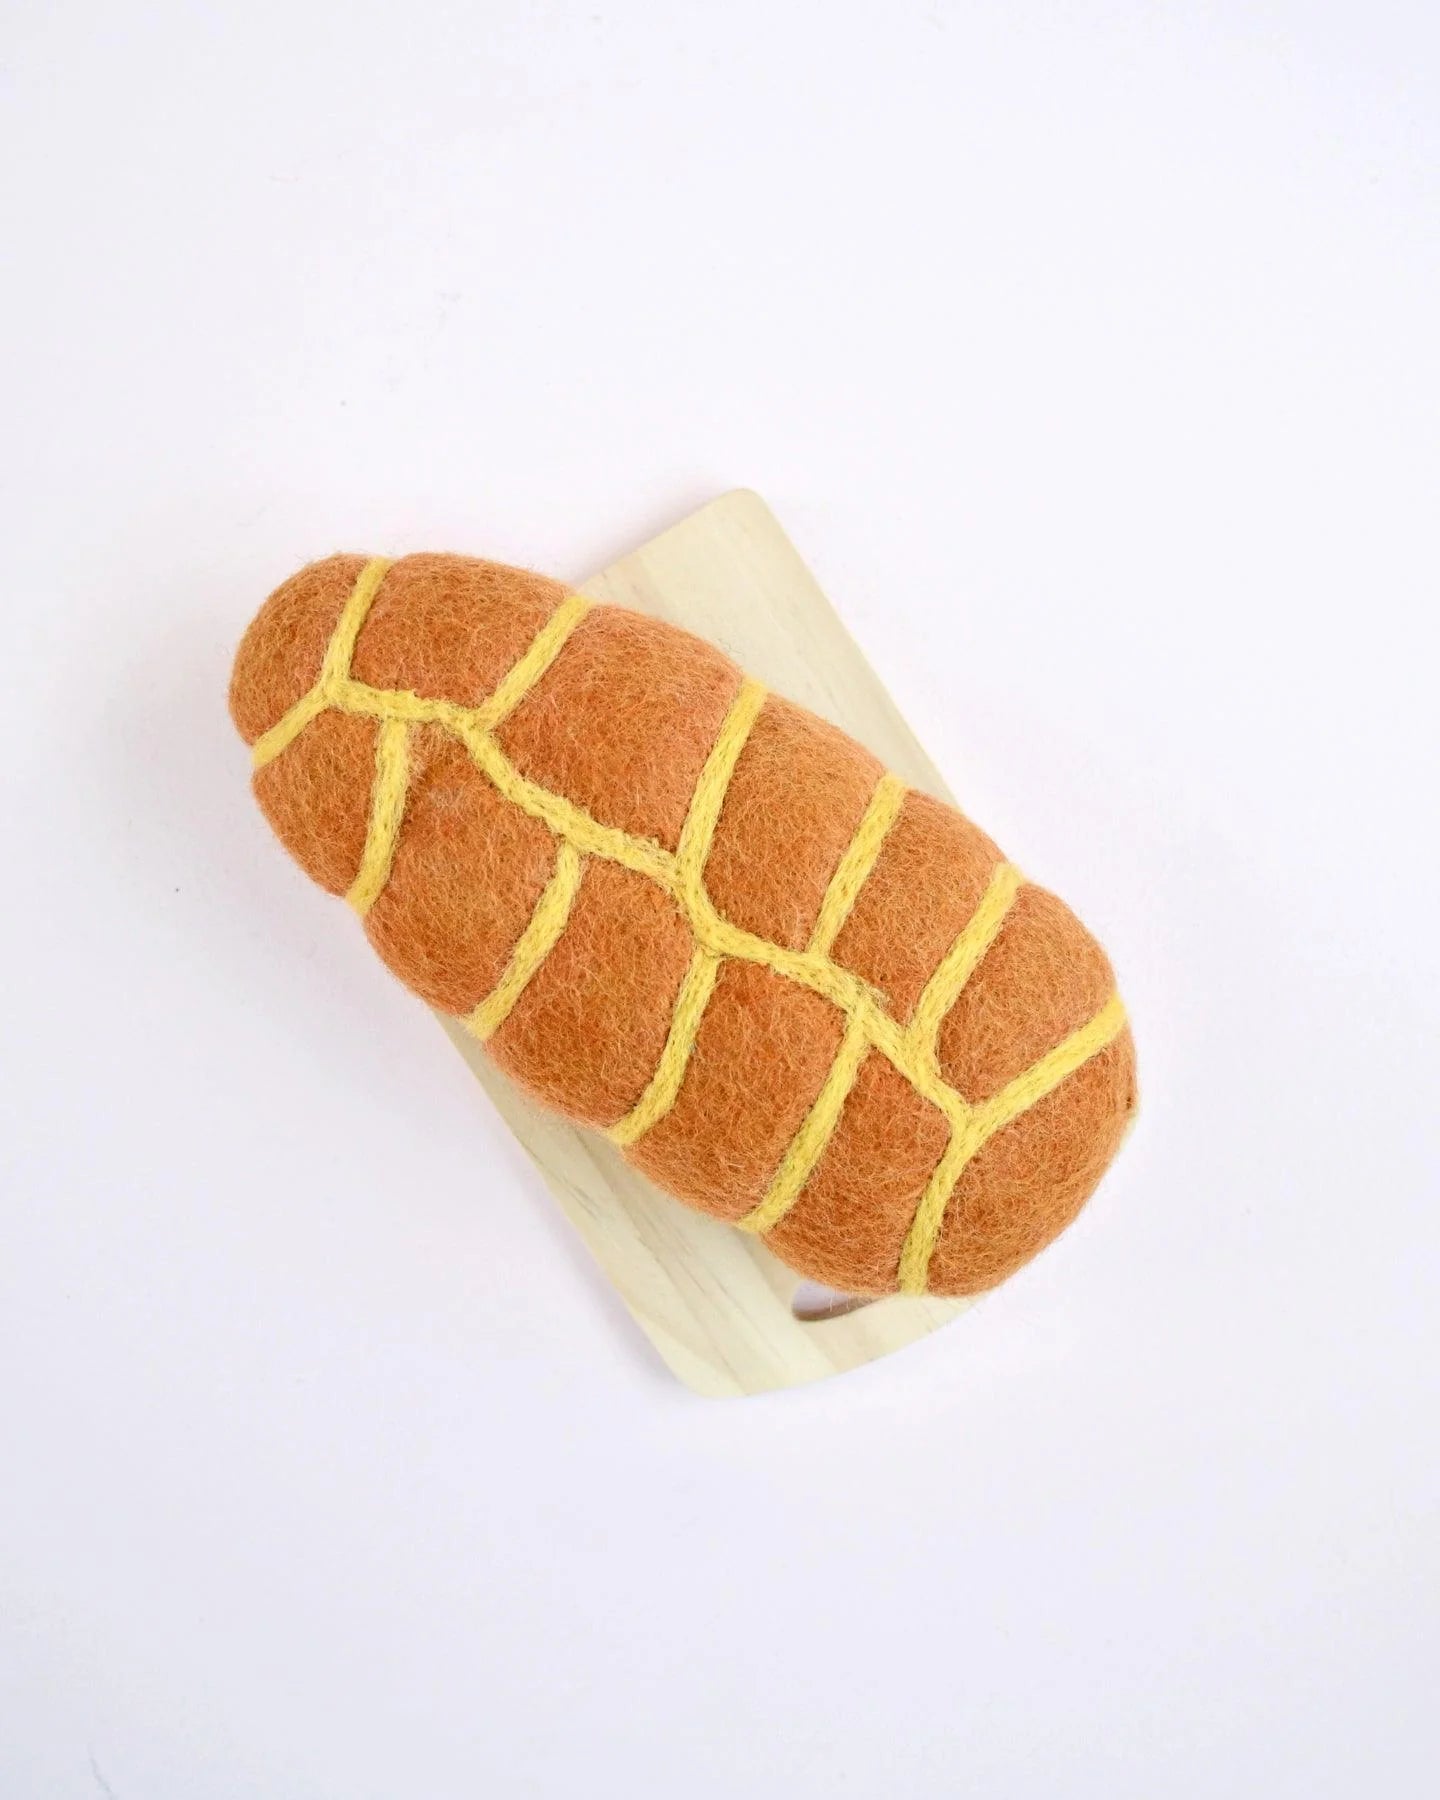 Felt Braided bread loaf